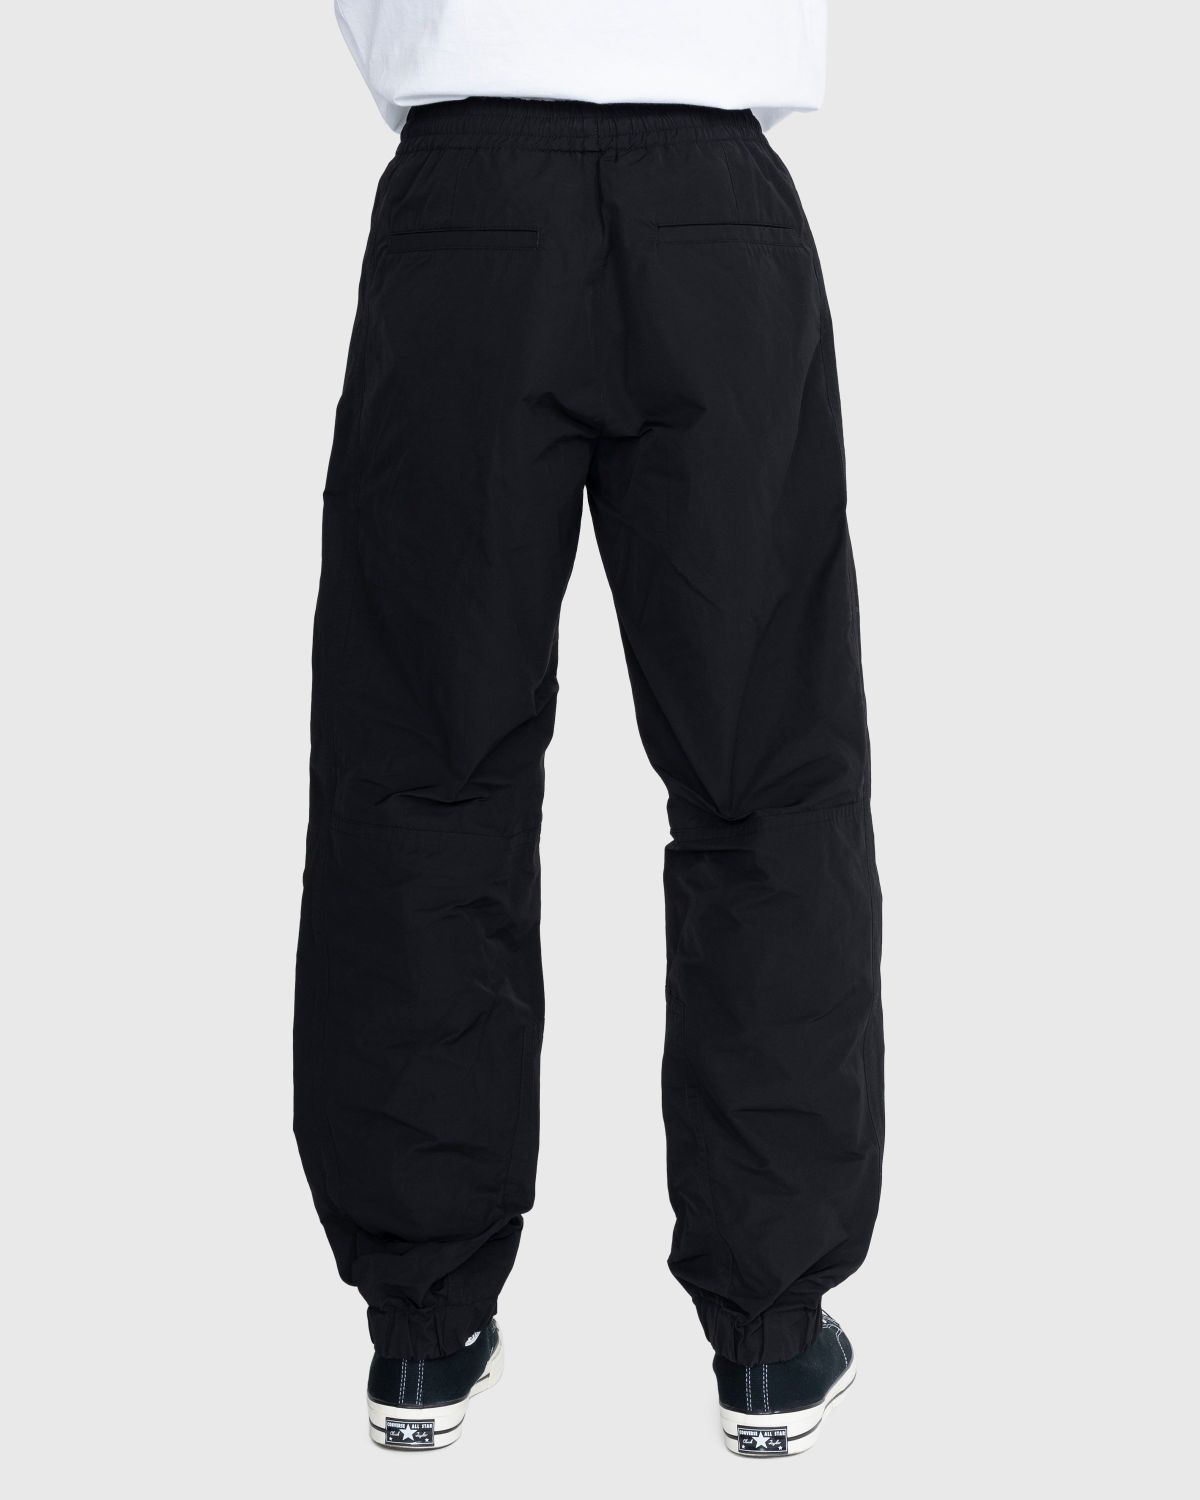 Dries van Noten – Peatt Pants - Active Pants - Black - Image 4